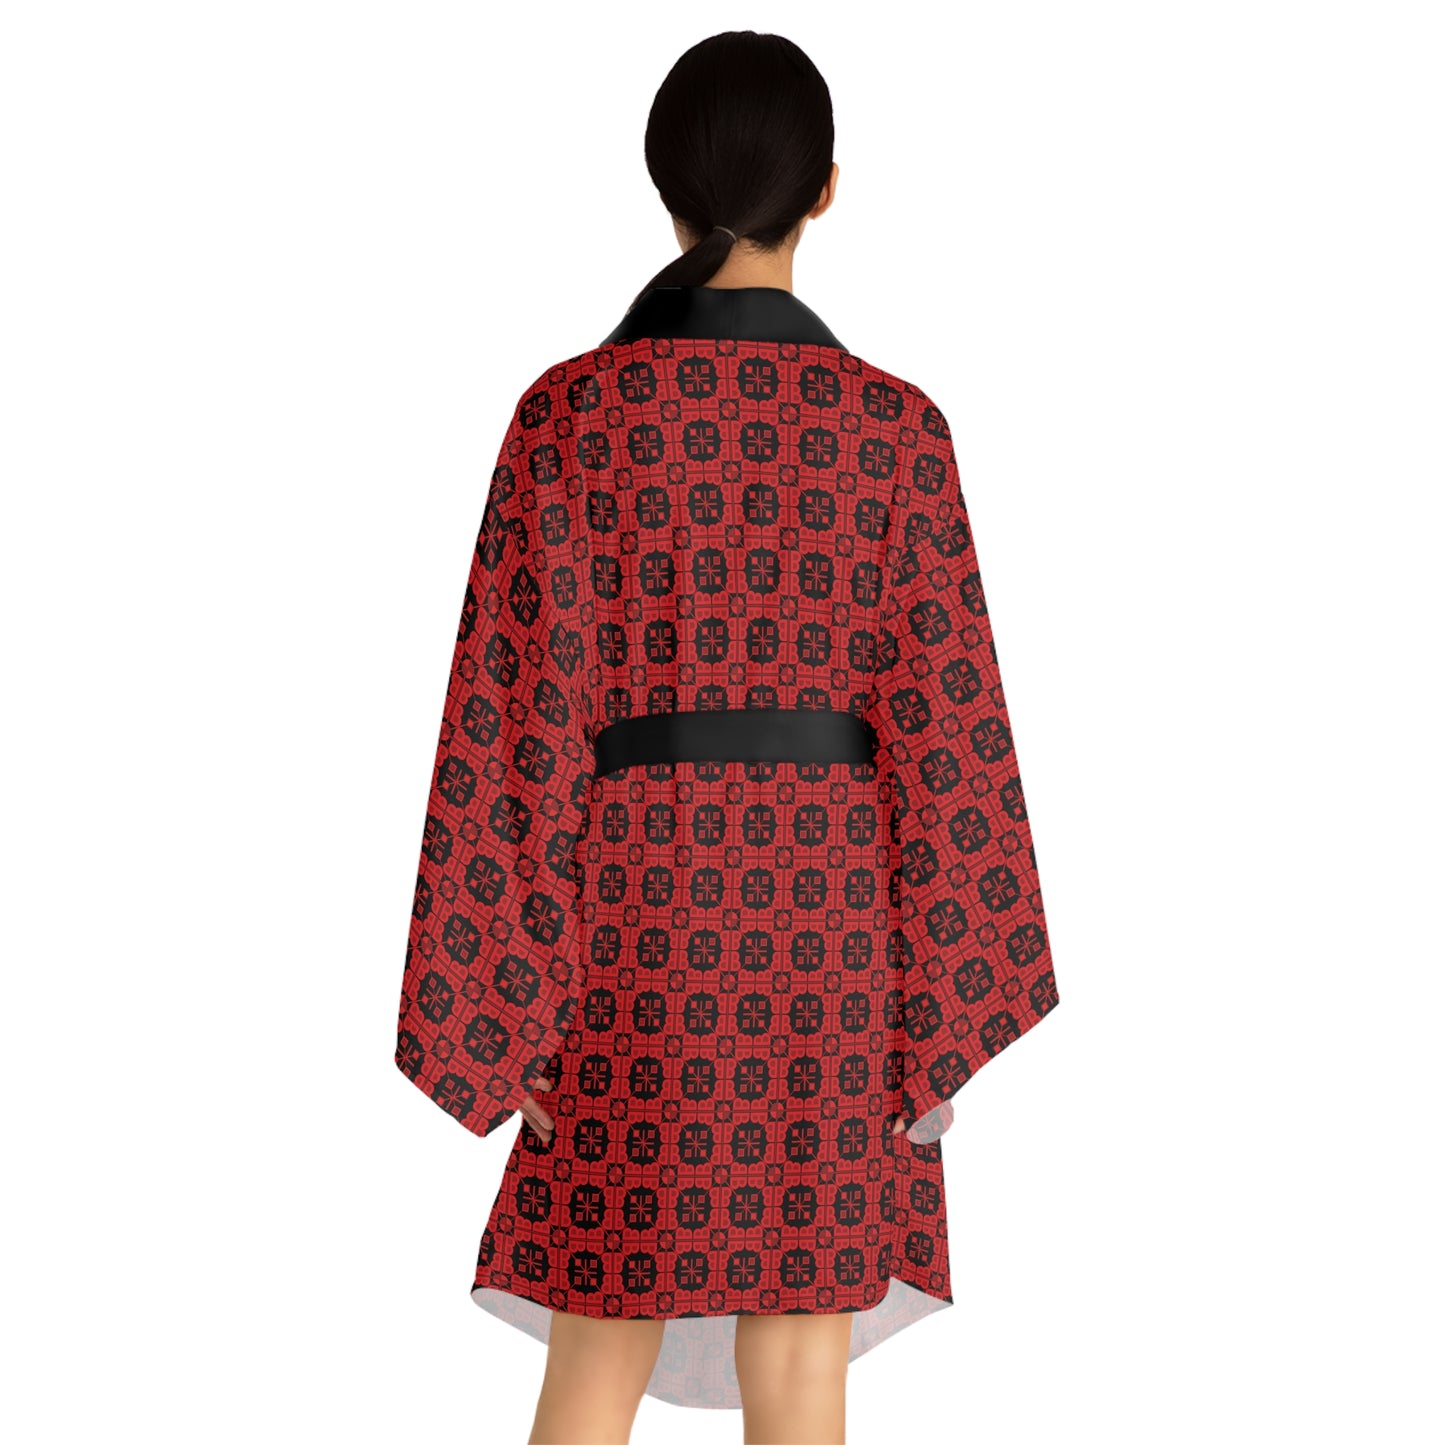 Letter Art - B - Red - Black 000000 - Long Sleeve Kimono Robe (AOP)